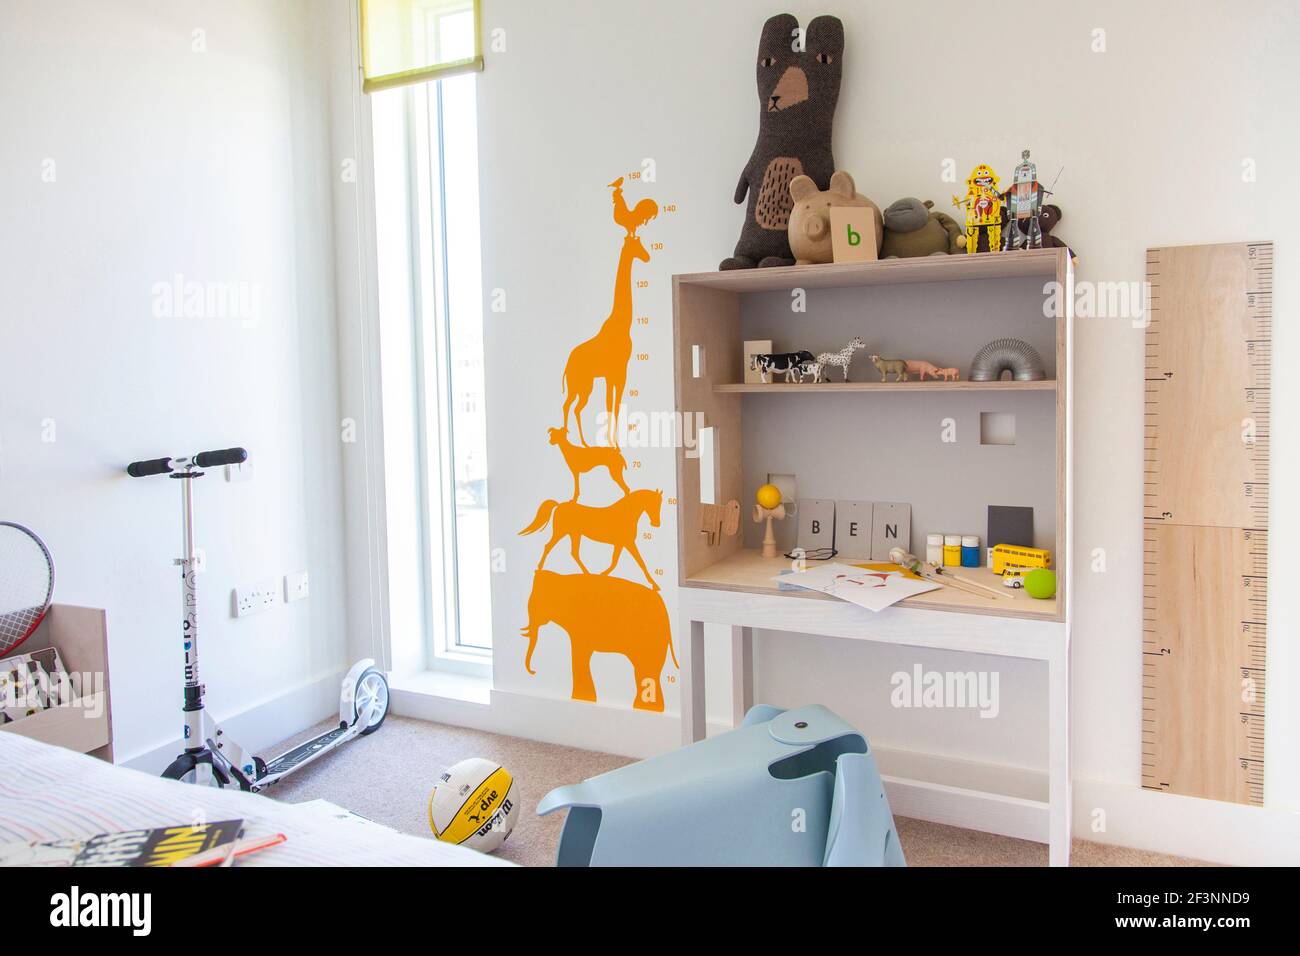 Los niños dormitorio con escritorio. Una casa combinando estilo moderno minimalista con visualización de objetos tradicionales que se utilizan en la vida diaria. Foto de stock